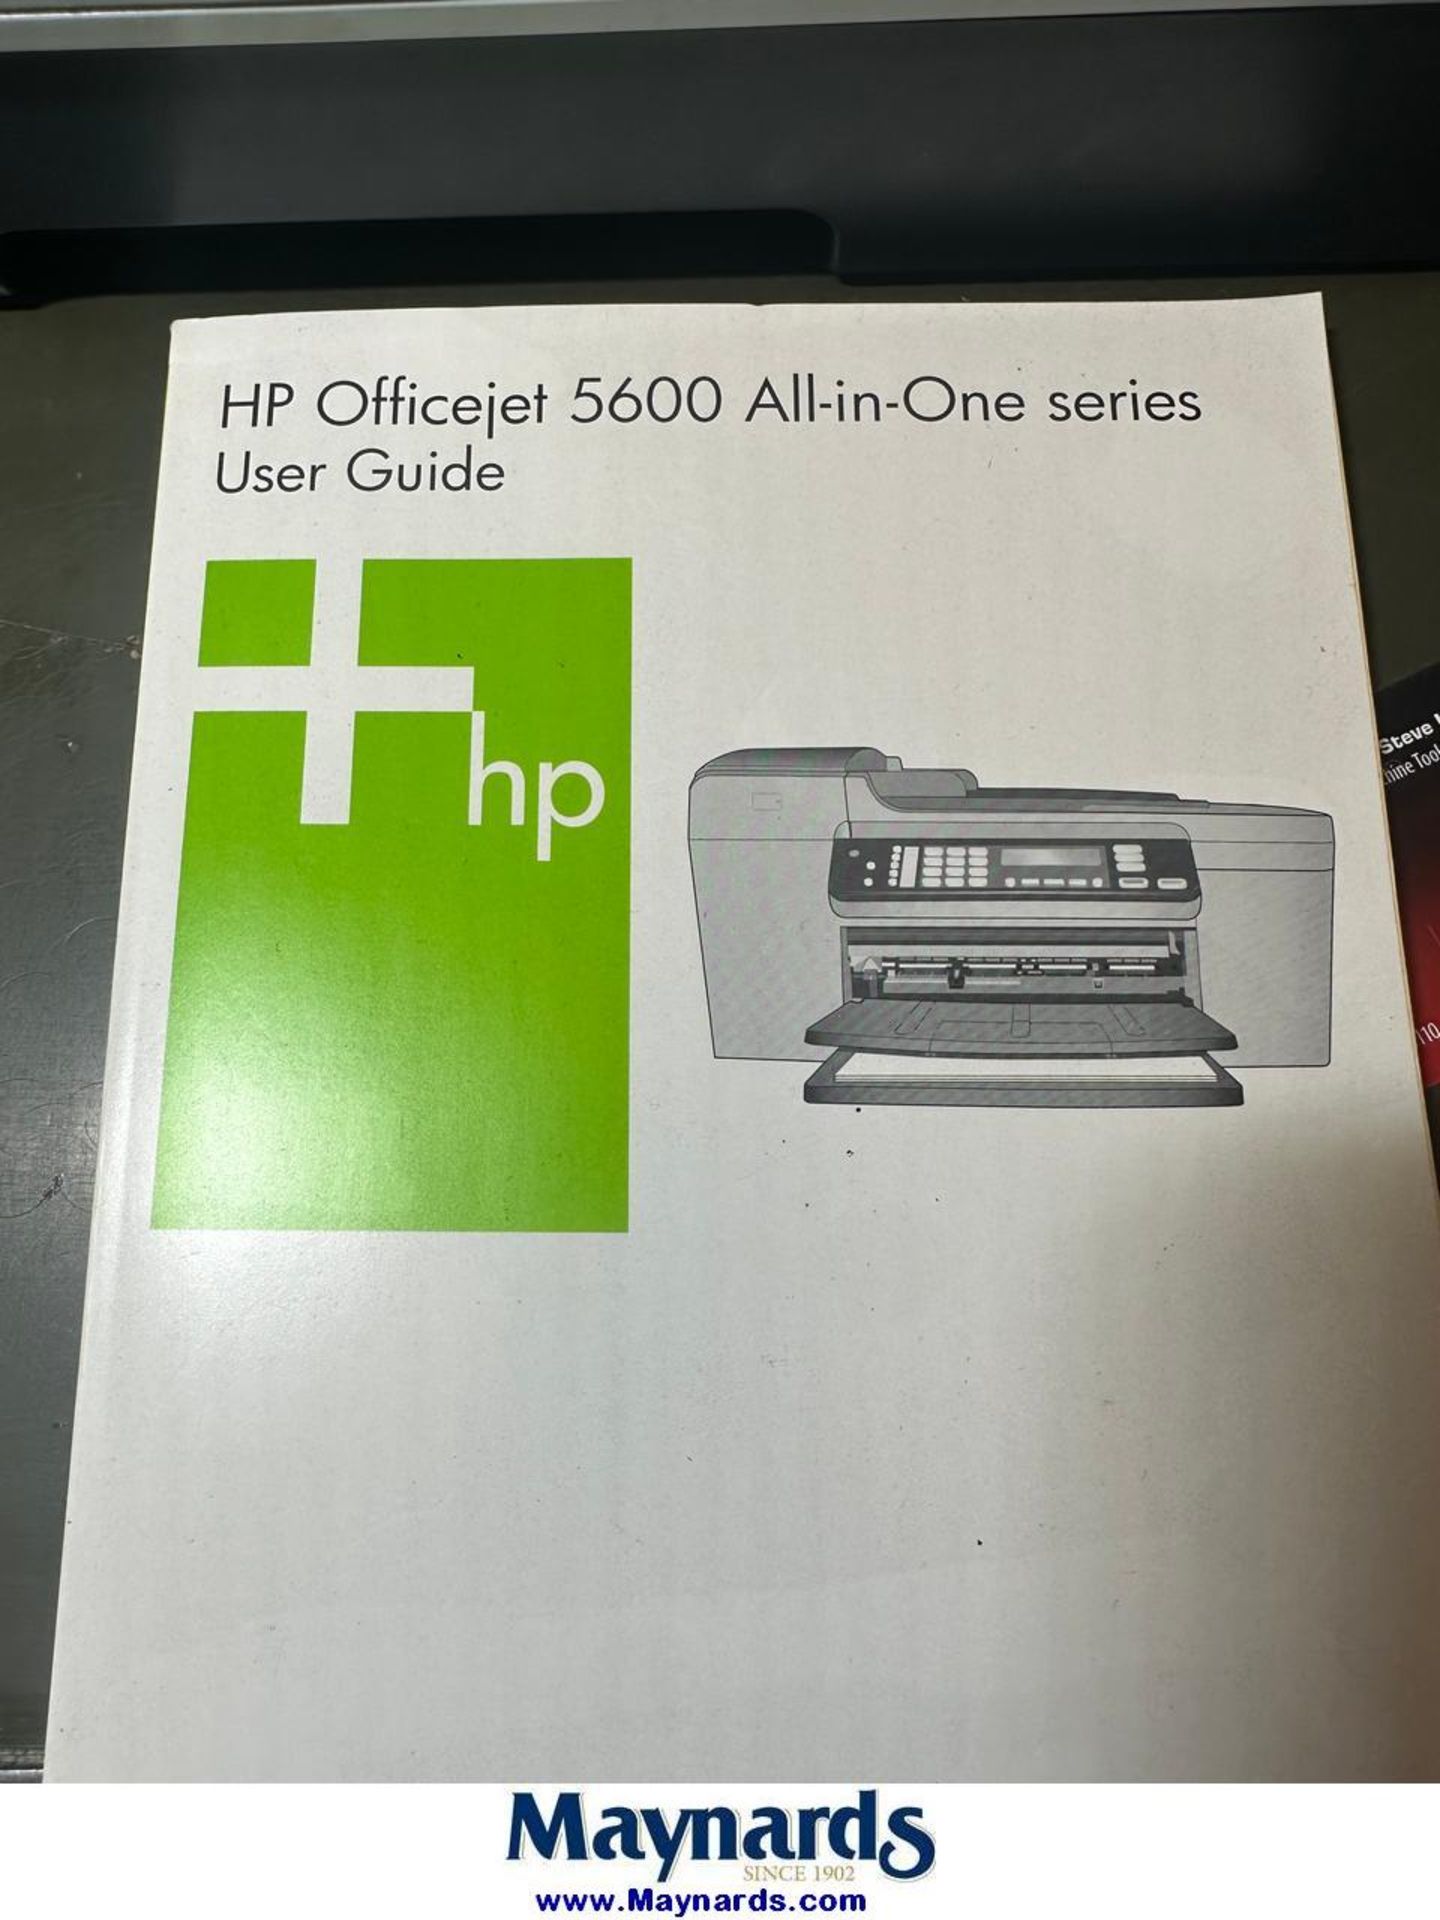 HP Color LaserJet CM1312nfi MFP Color Printer/Copier/Fax Machine - Image 6 of 6